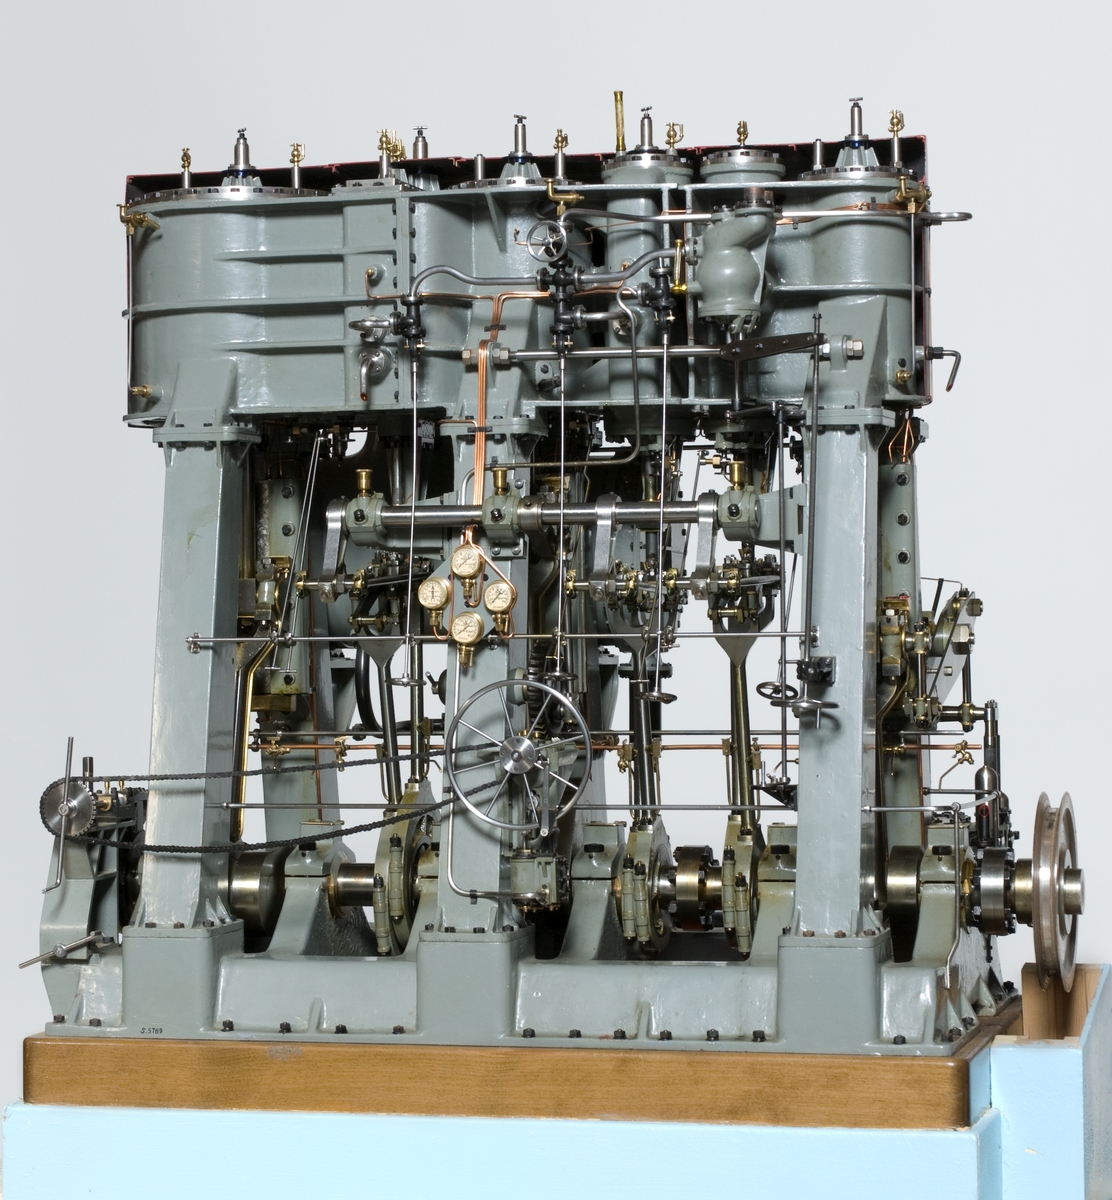 Modell av trippelexpansionsmaskin från lastfartyget SONJA byggd på Helsingborgs varv 1940. Komplett till alla delar, monterad på polerad träplatta. gråmålat stativ, cylindrarnas skyddskåpa avlägsnad på manöversidan. Cylindrarnas kannor ej insatta. Tillhörande elmotor för kilremsdrift.